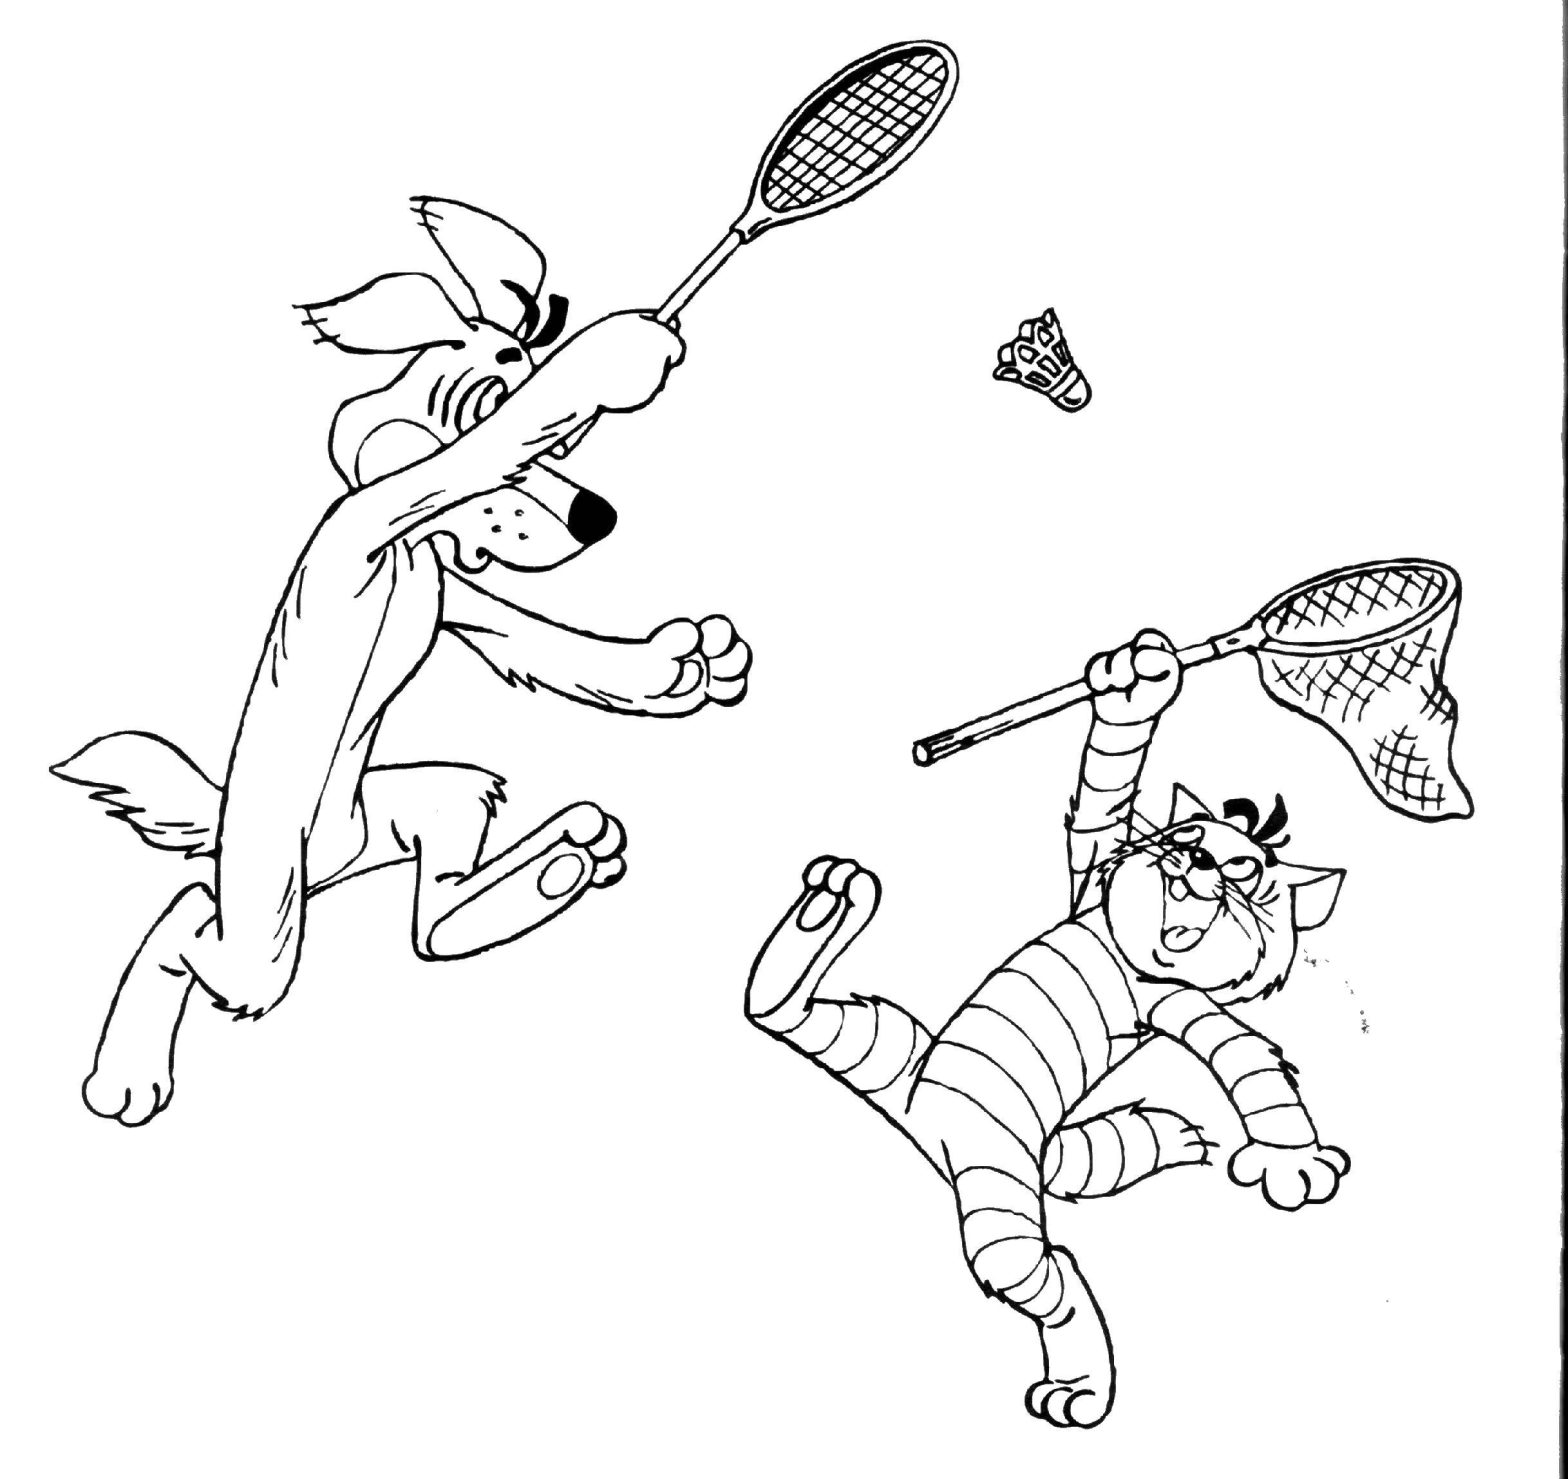 Раскрашенный рисунок с персонажами из мультфильма кот и собака (кот, собака, игры, сказки)